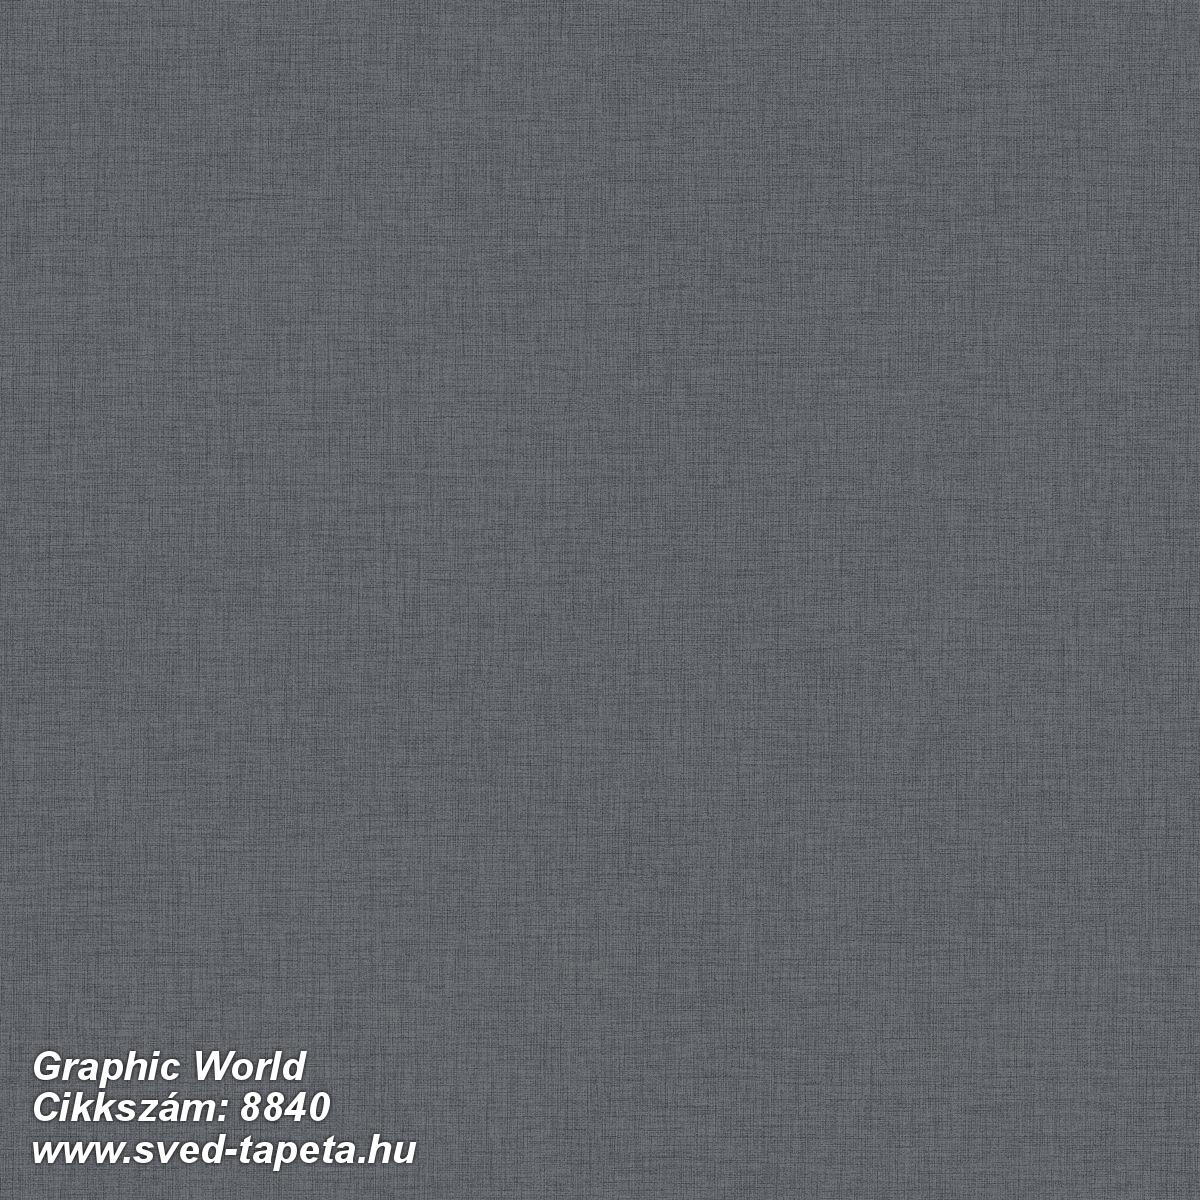 Graphic World 8840 cikkszámú svéd ECOgyártmányú designtapéta